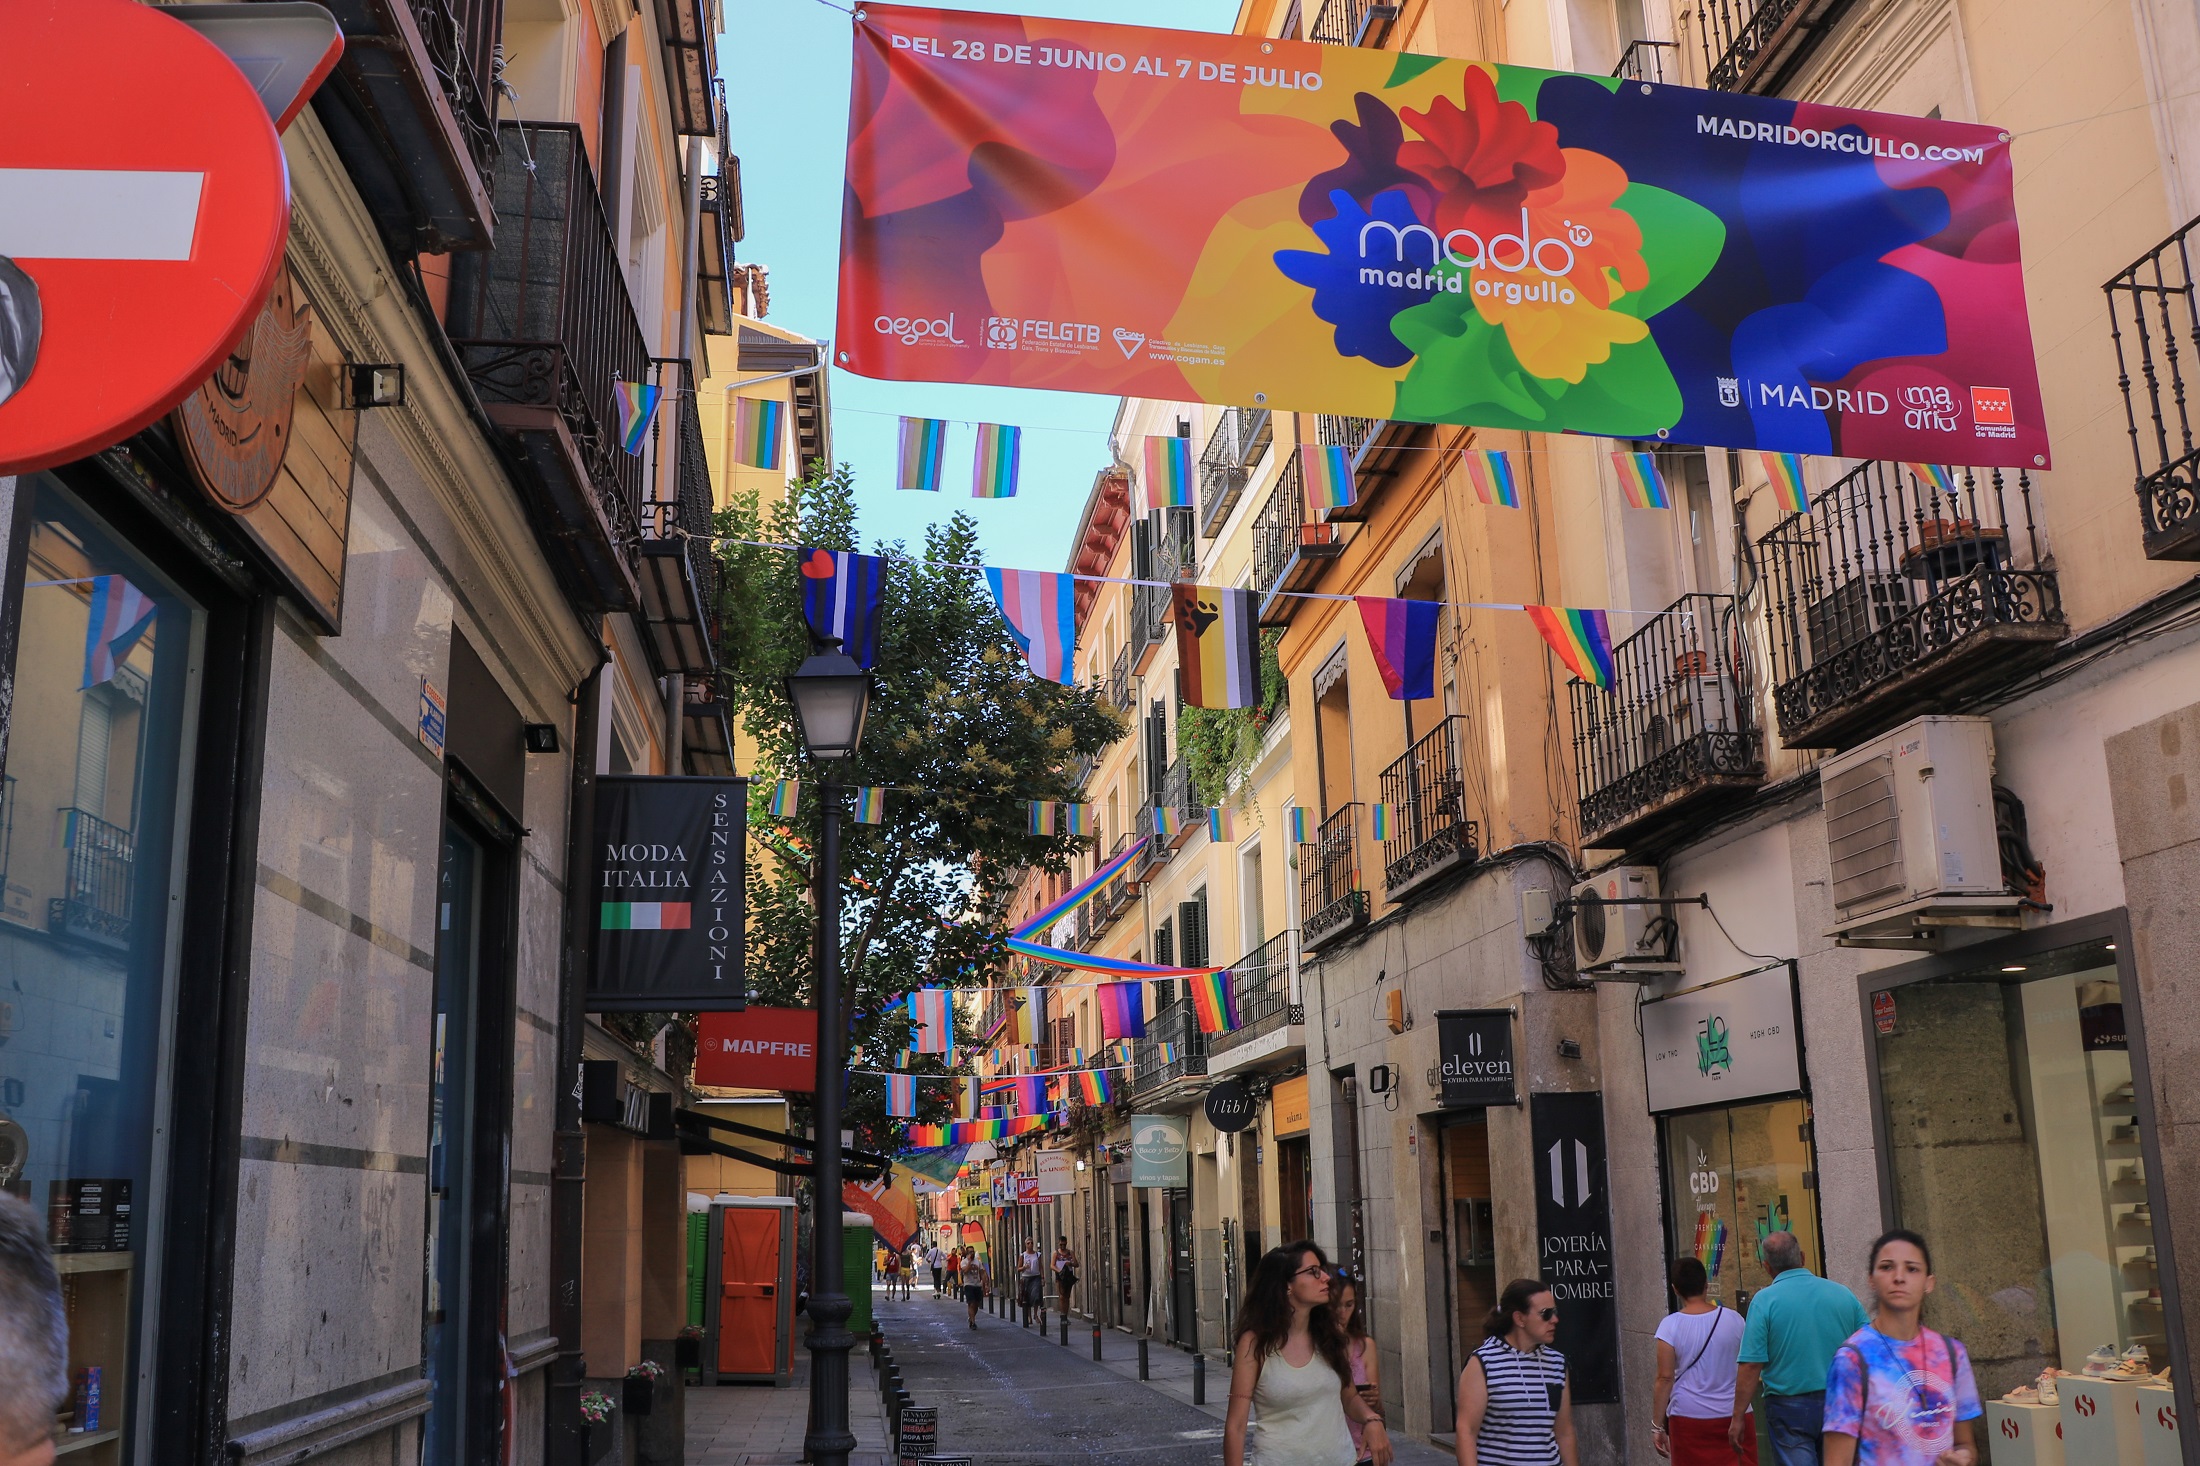 La celebración del MADO establece restricciones en Madrid del 25 de junio al 2 de julio - La Viña